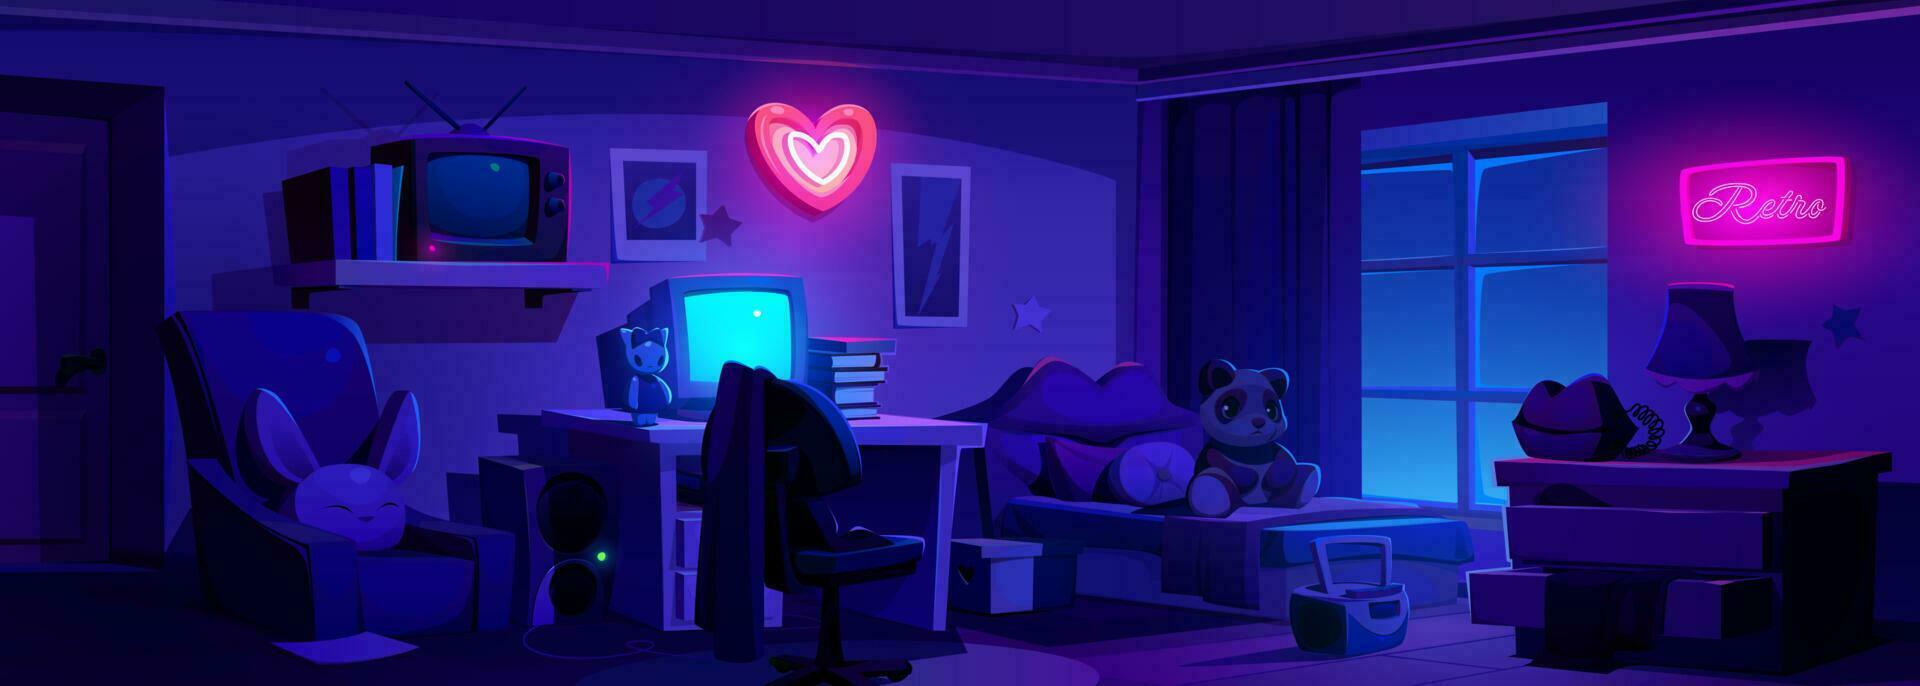 notte y2k ragazza Camera da letto interno con neon cuore vettore